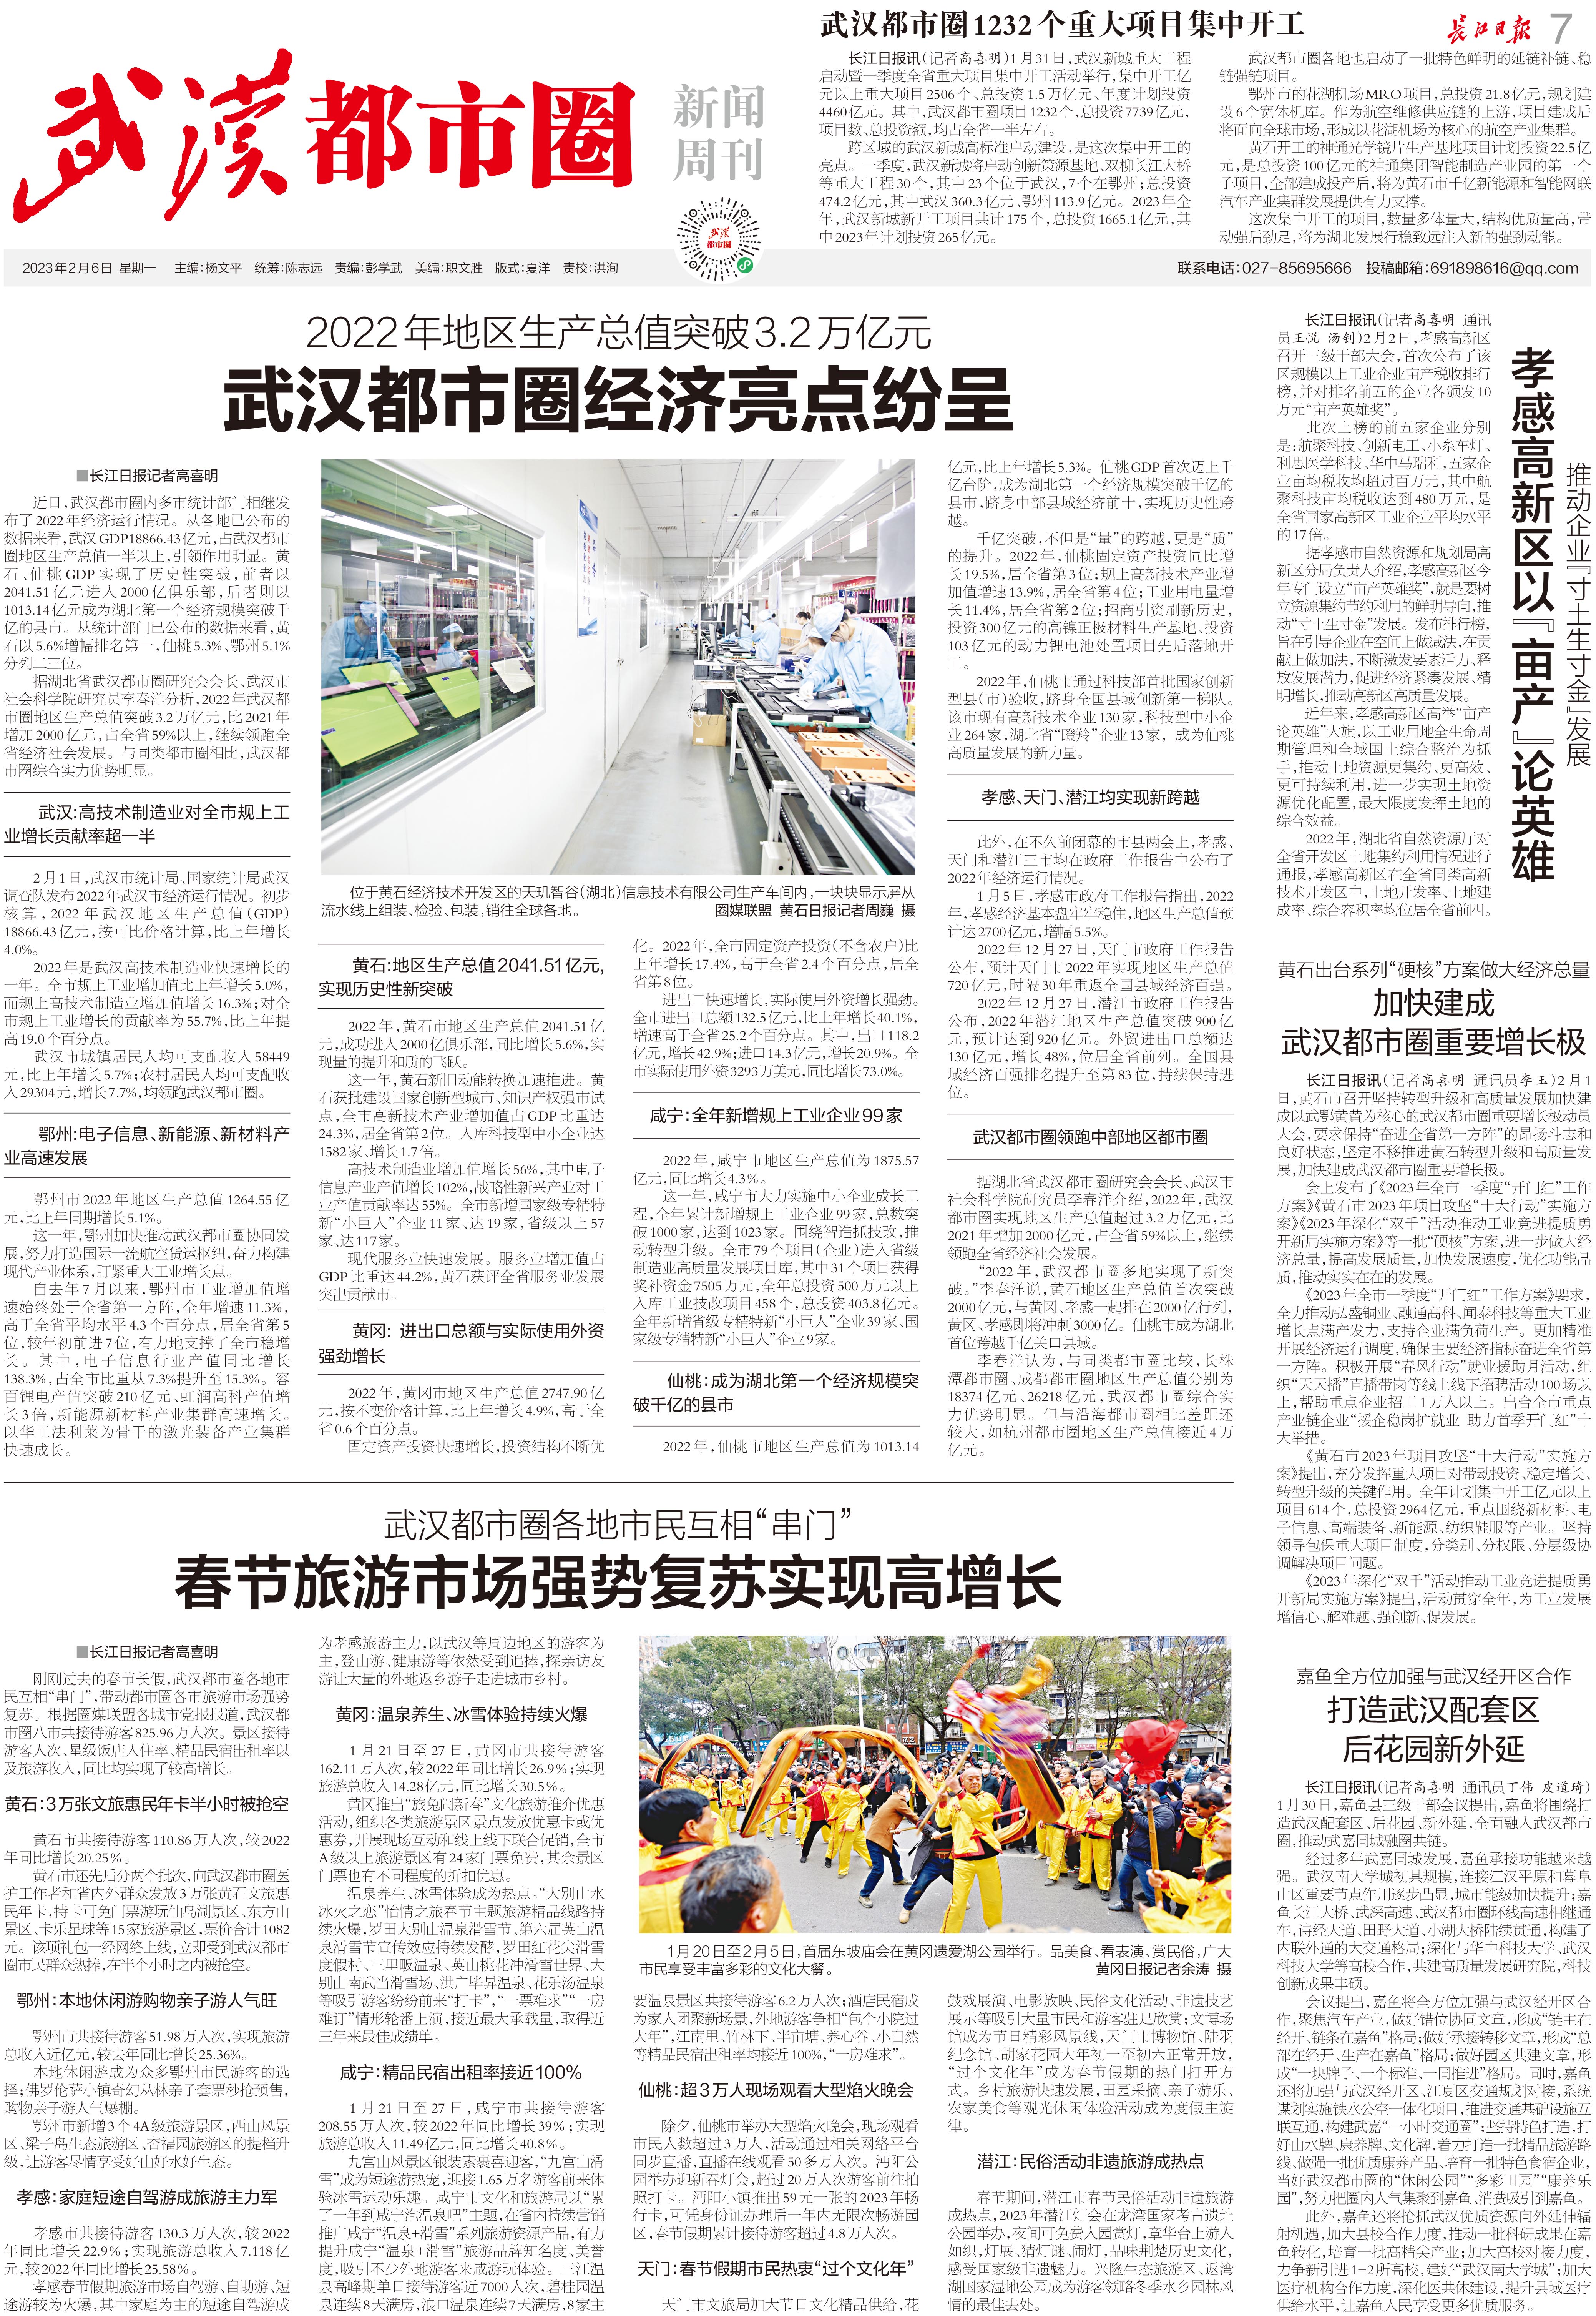 九城同心向未来长江日报武汉都市圈新闻周刊2023年2月6日第07期报纸